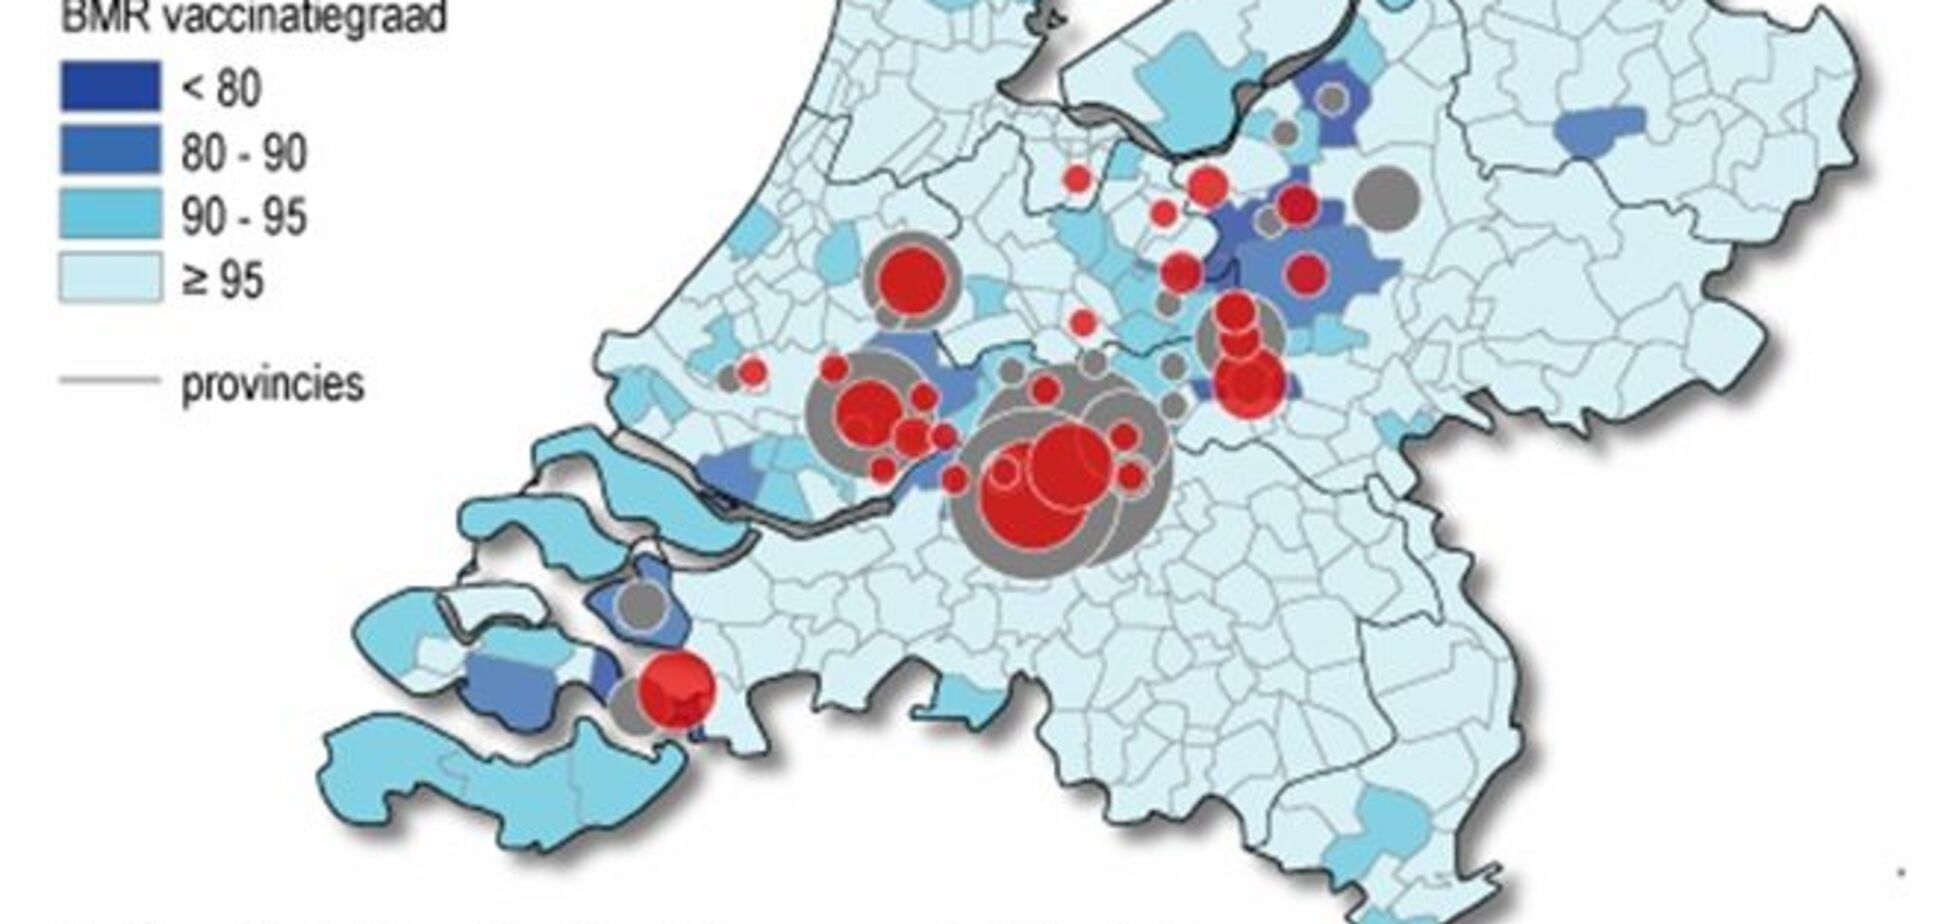 Емідемія кору в Нідерландах торкнулася тільки протестантських фундаменталістів